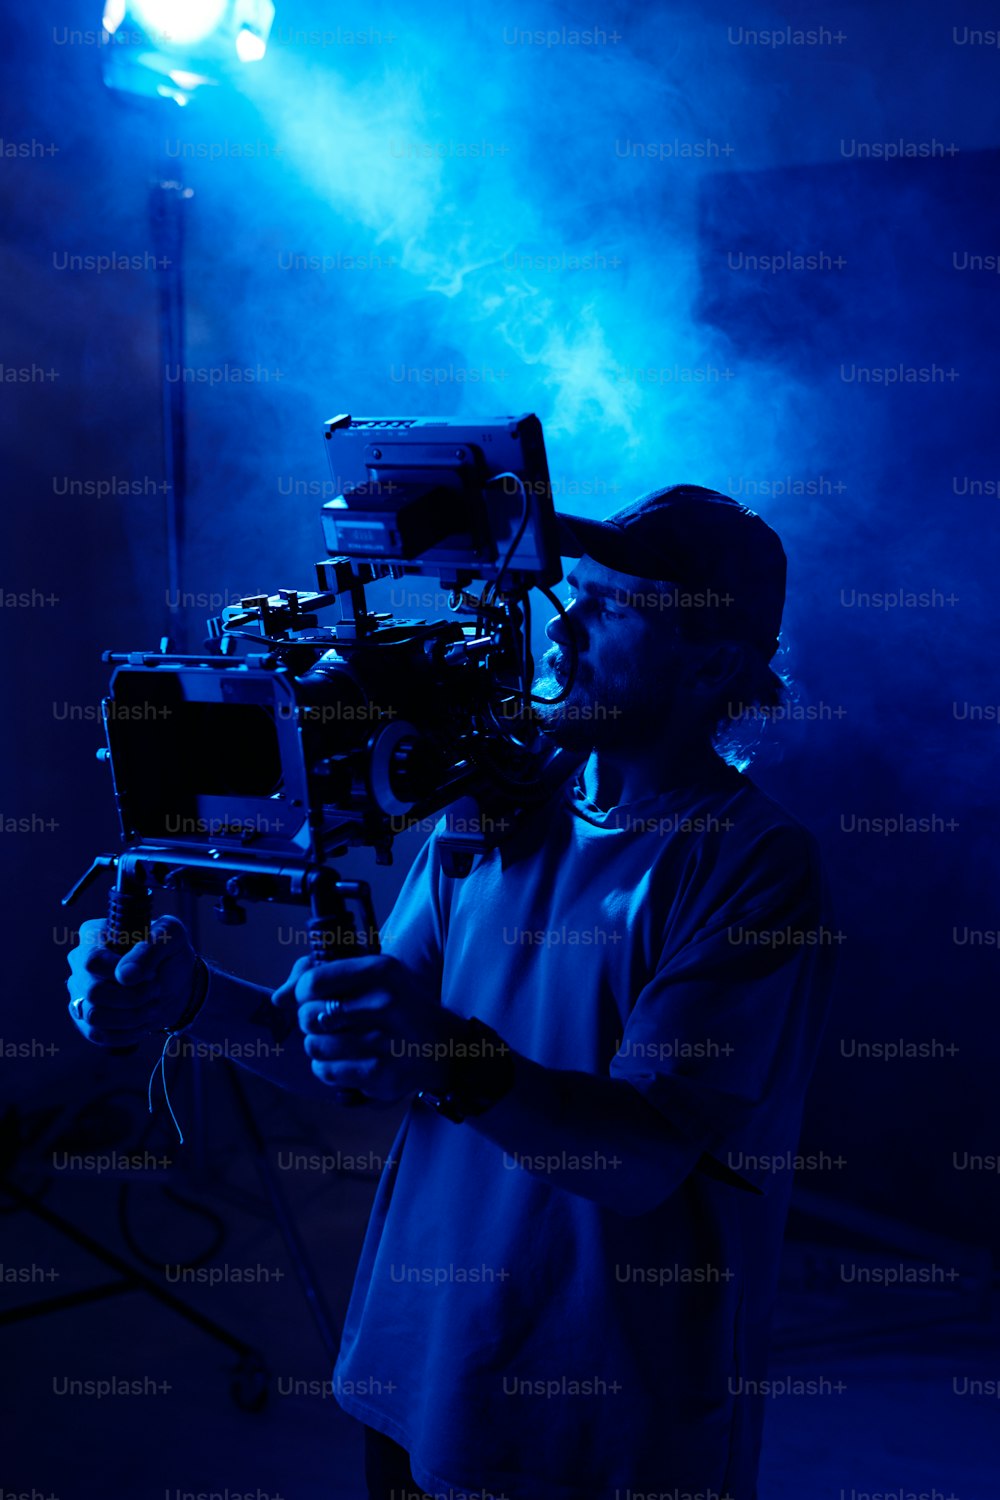 스테디캠을 가진 진지한 젊은 카메라맨은 비디오 촬영 중 푸른 빛으로 비추고 연기로 가득 찬 스튜디오에서 스포트라이트를 받으며 서 있다